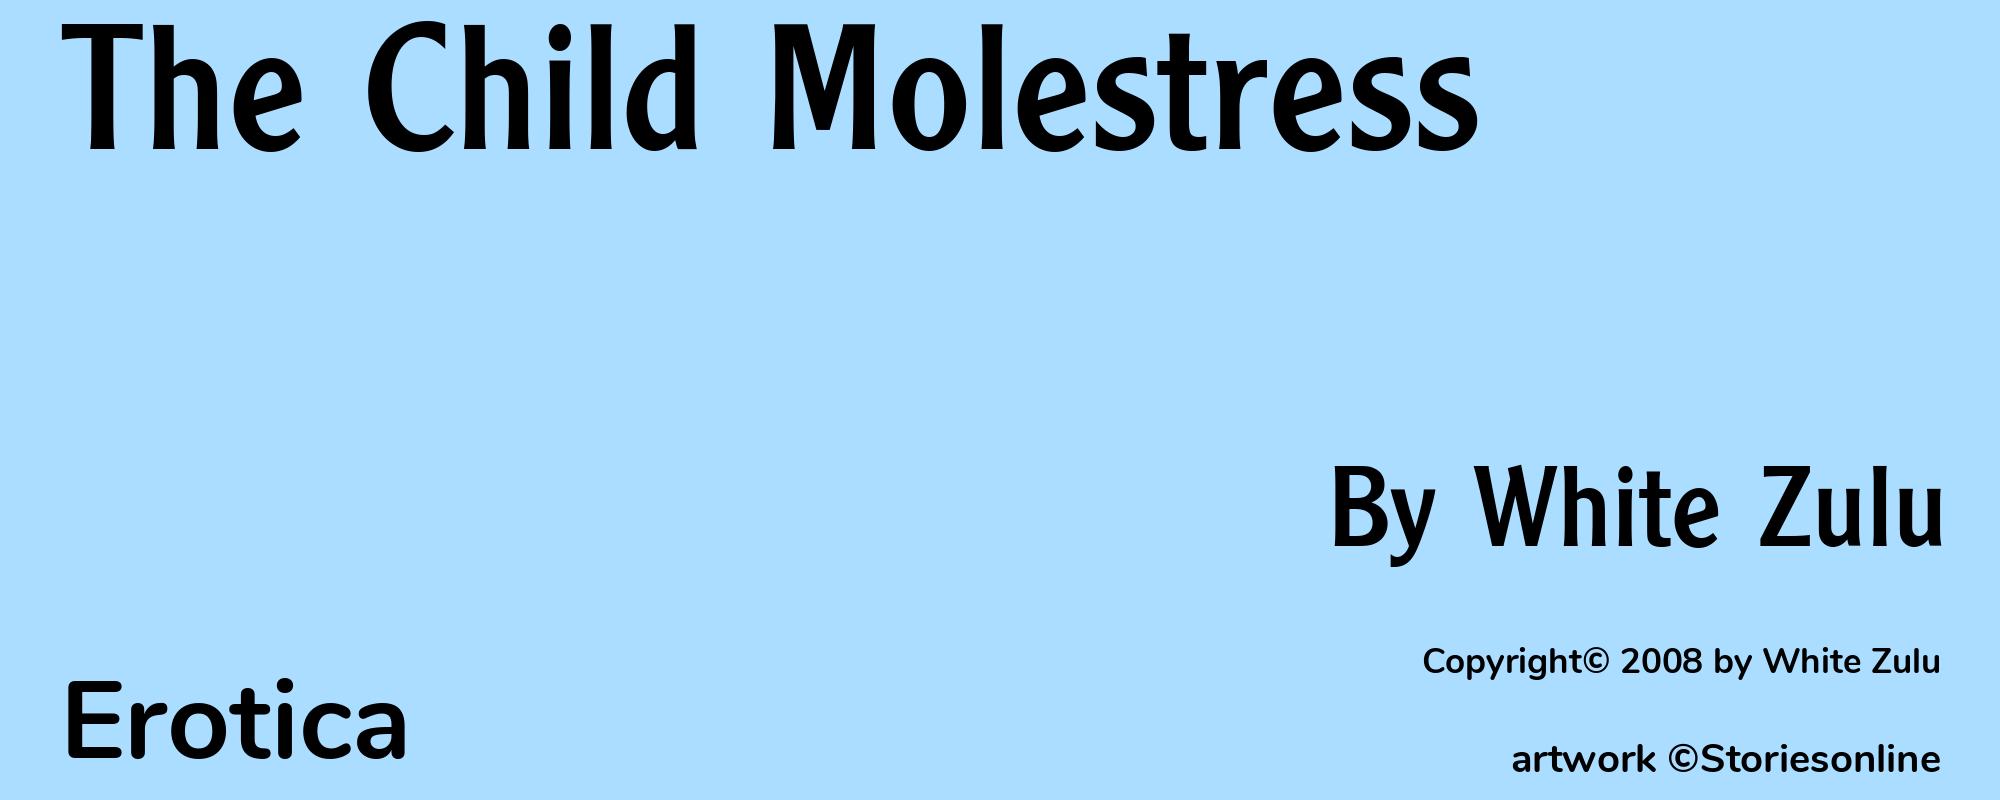 The Child Molestress - Cover